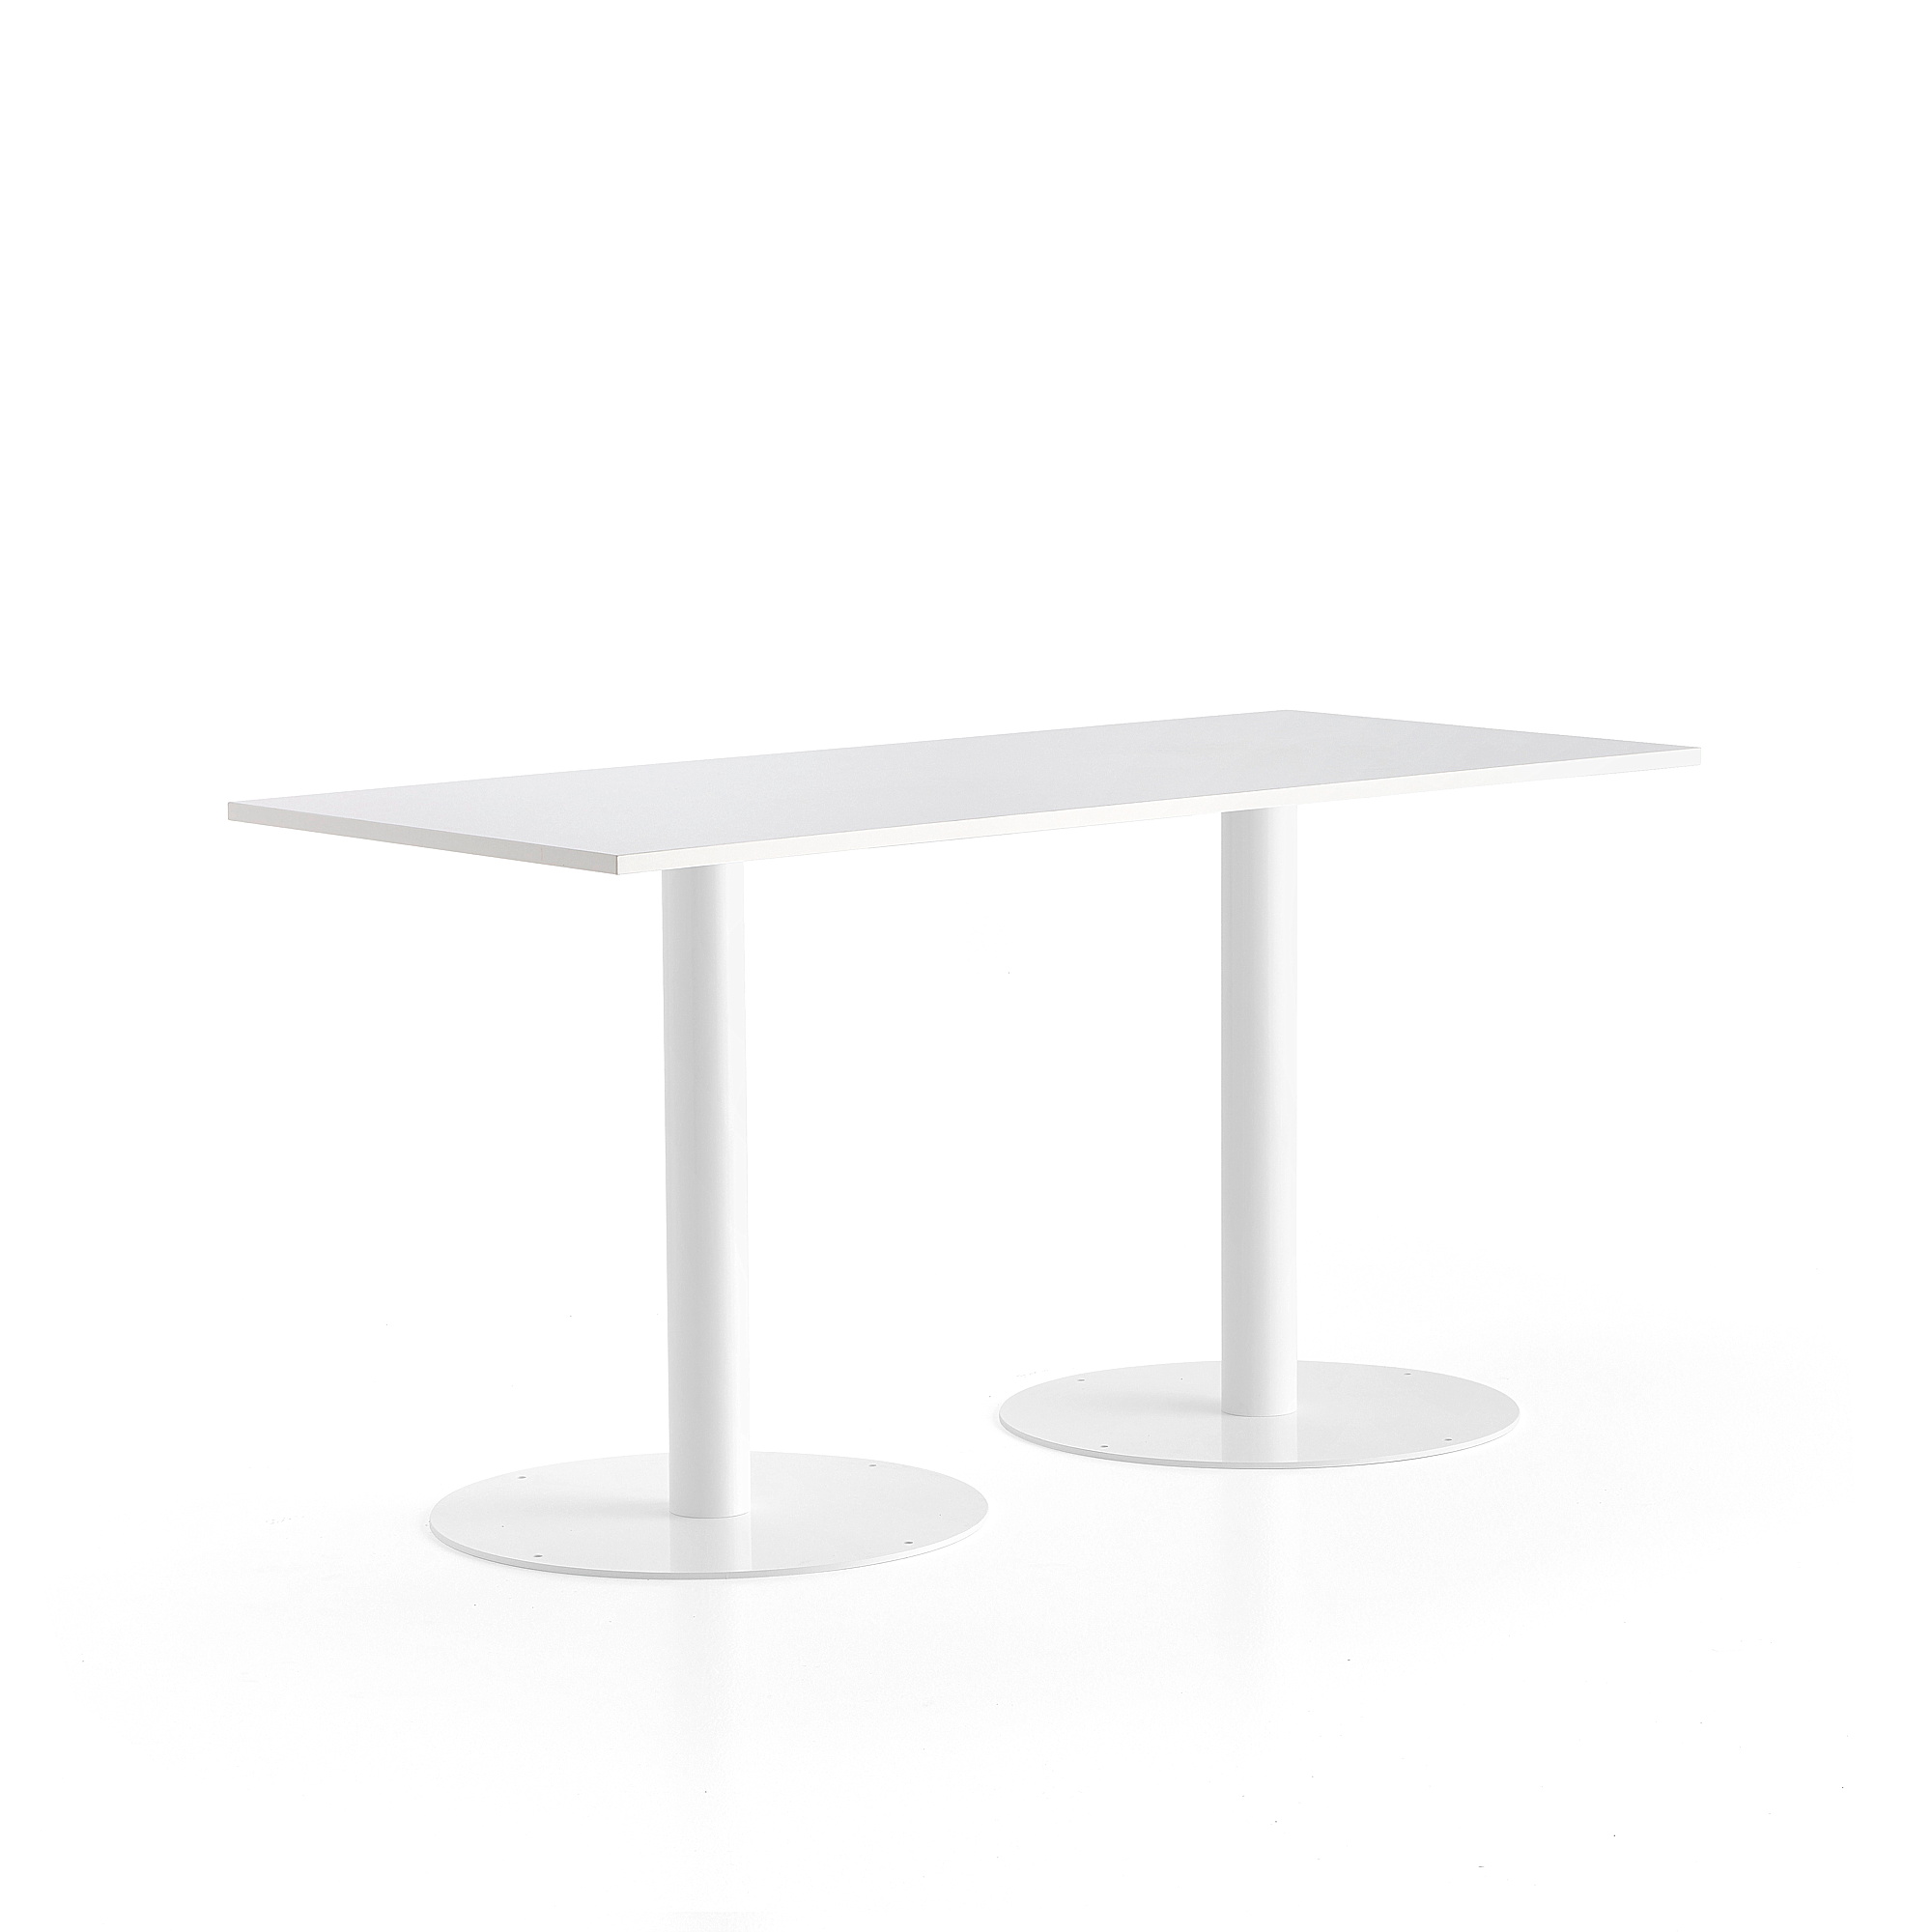 Stůl ALVA, 1800x800x900 mm, bílá, bílá